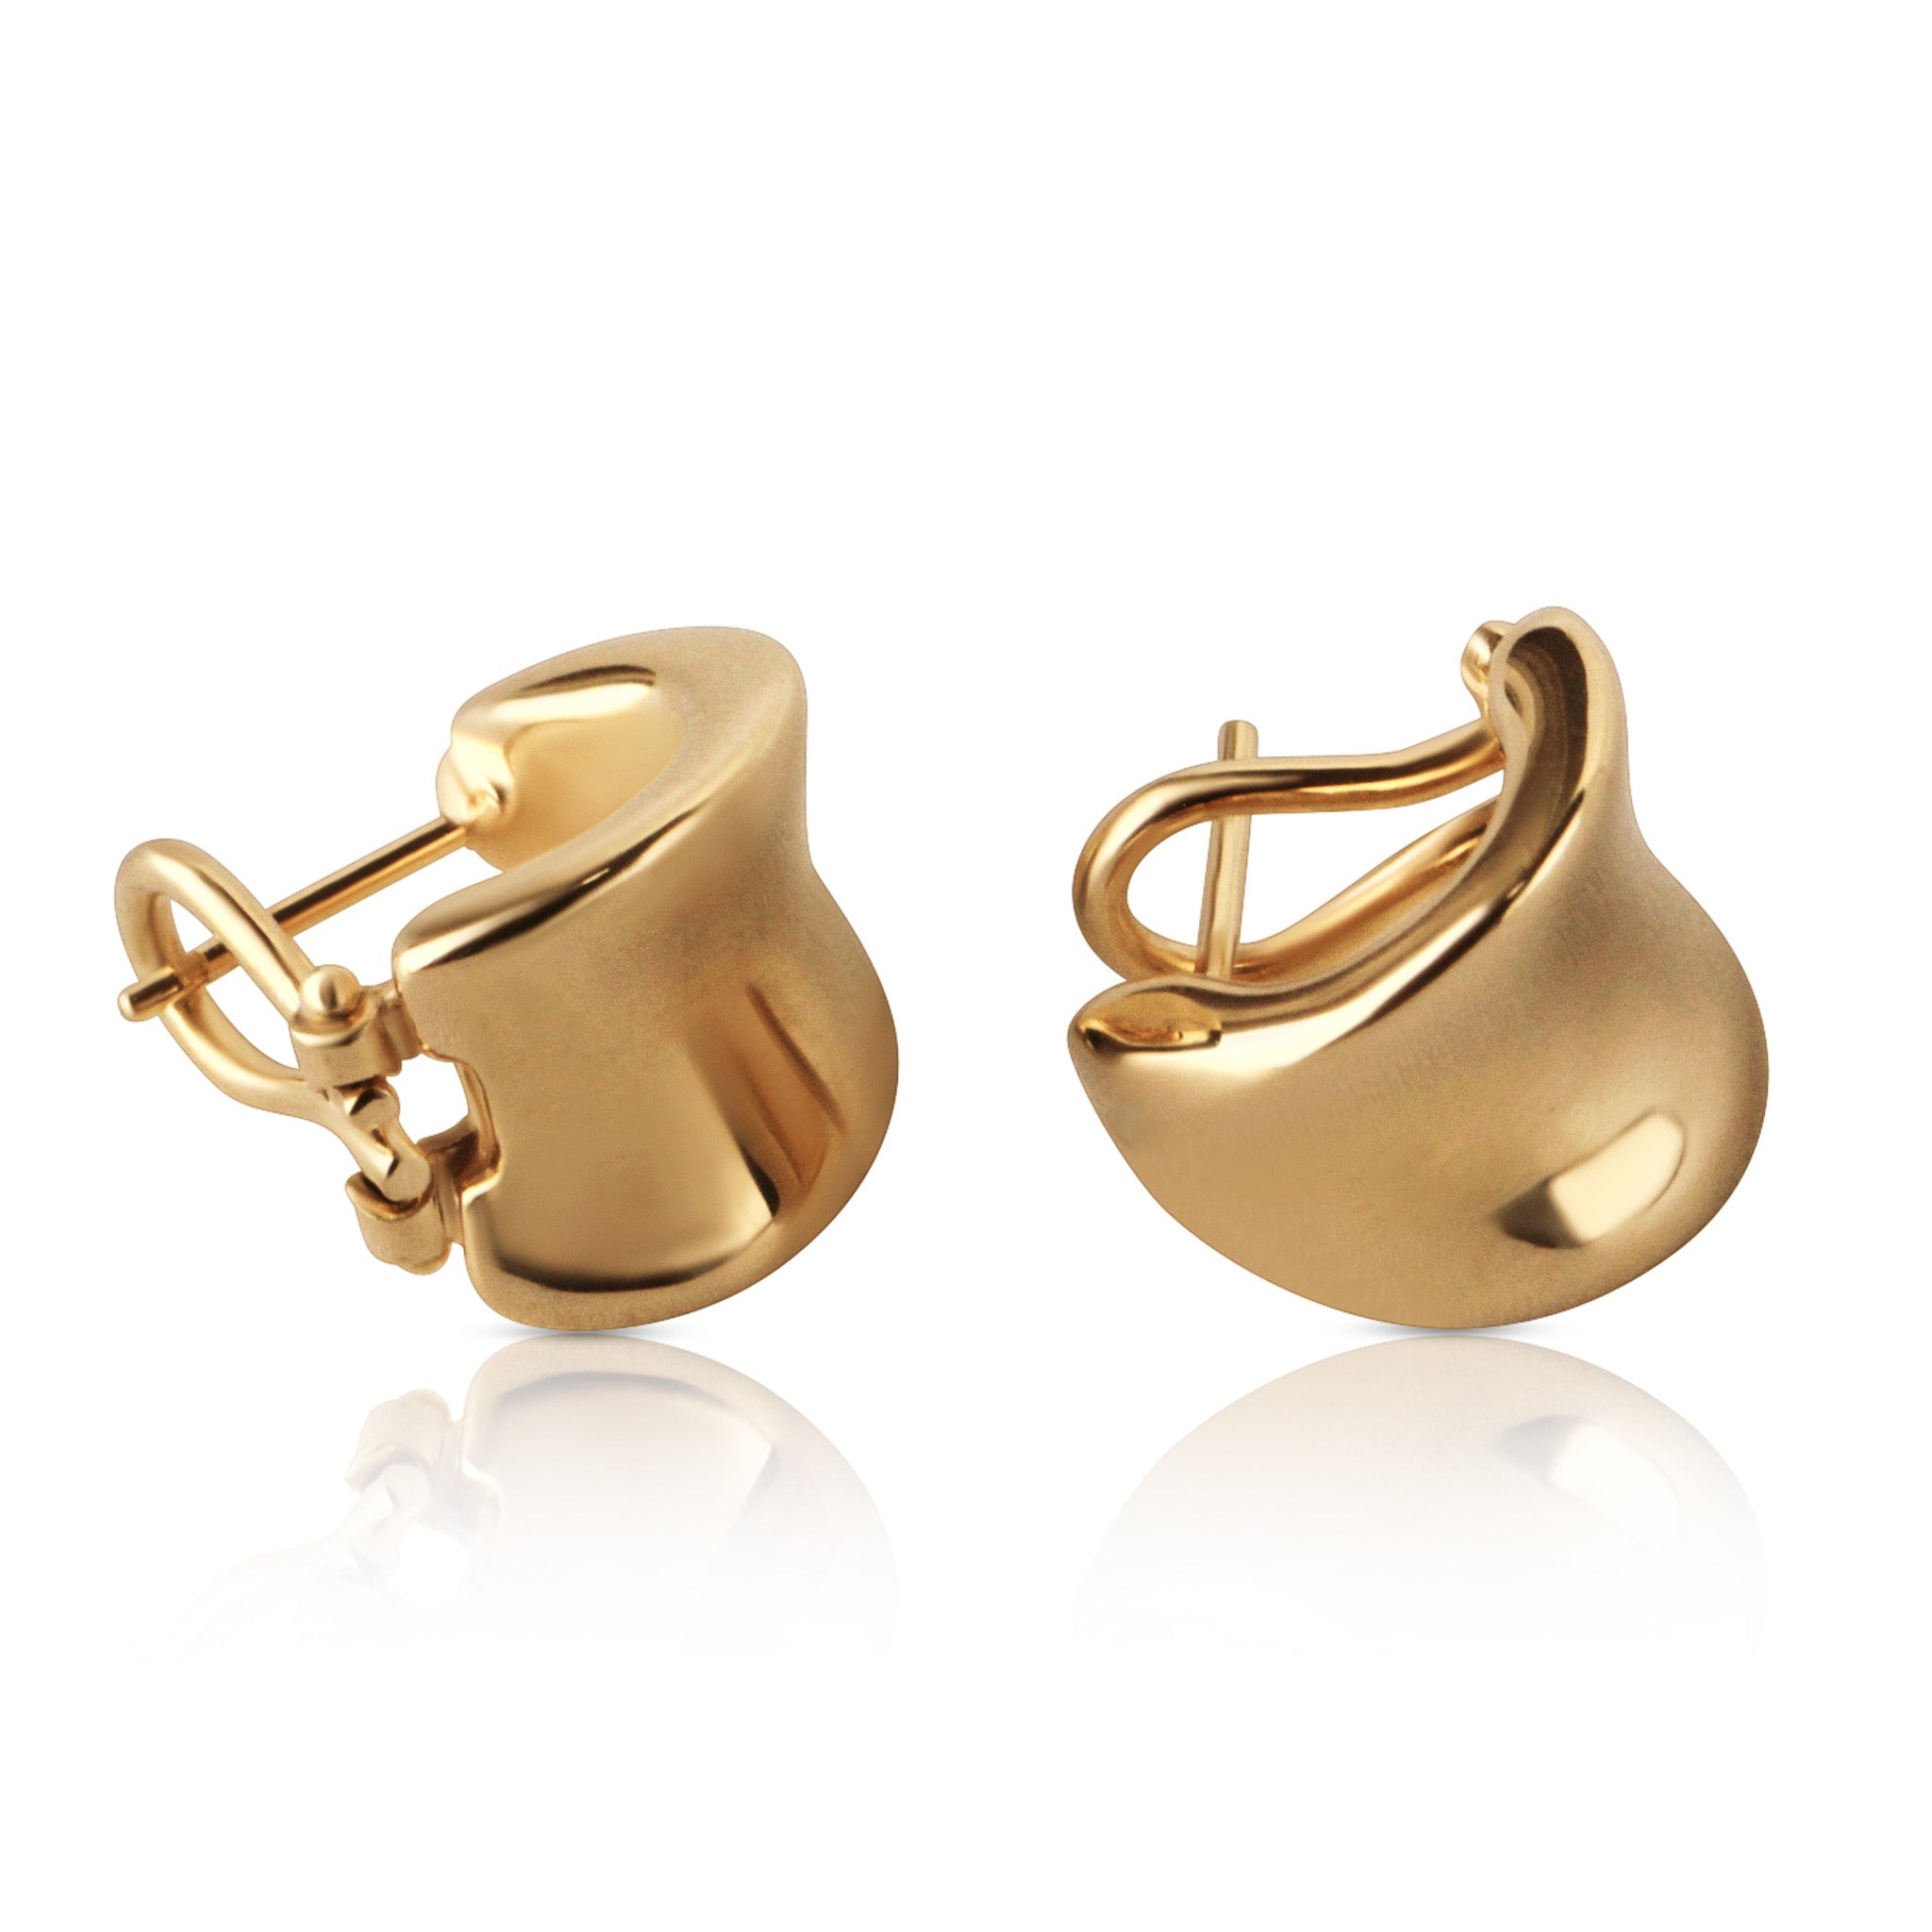 Gold huggies earrings